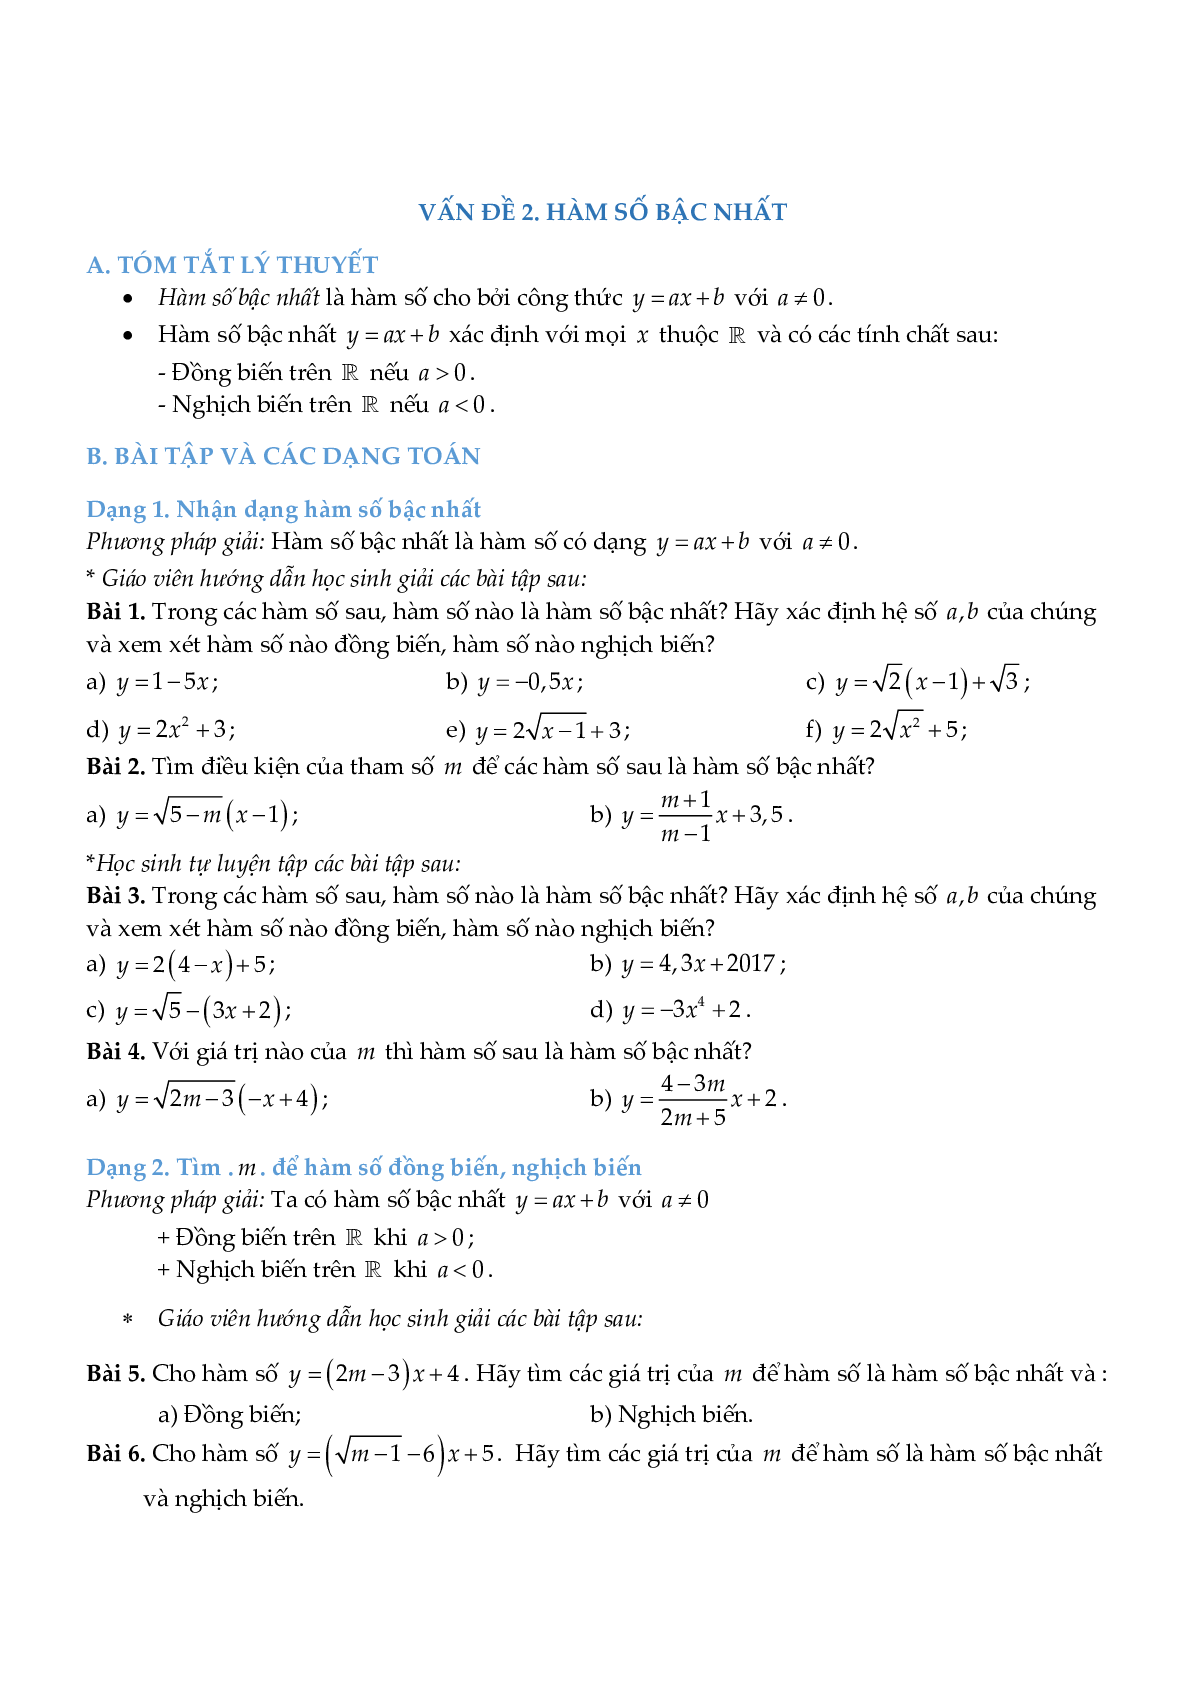 Chuyên đề hàm số bậc nhất (trang 8)